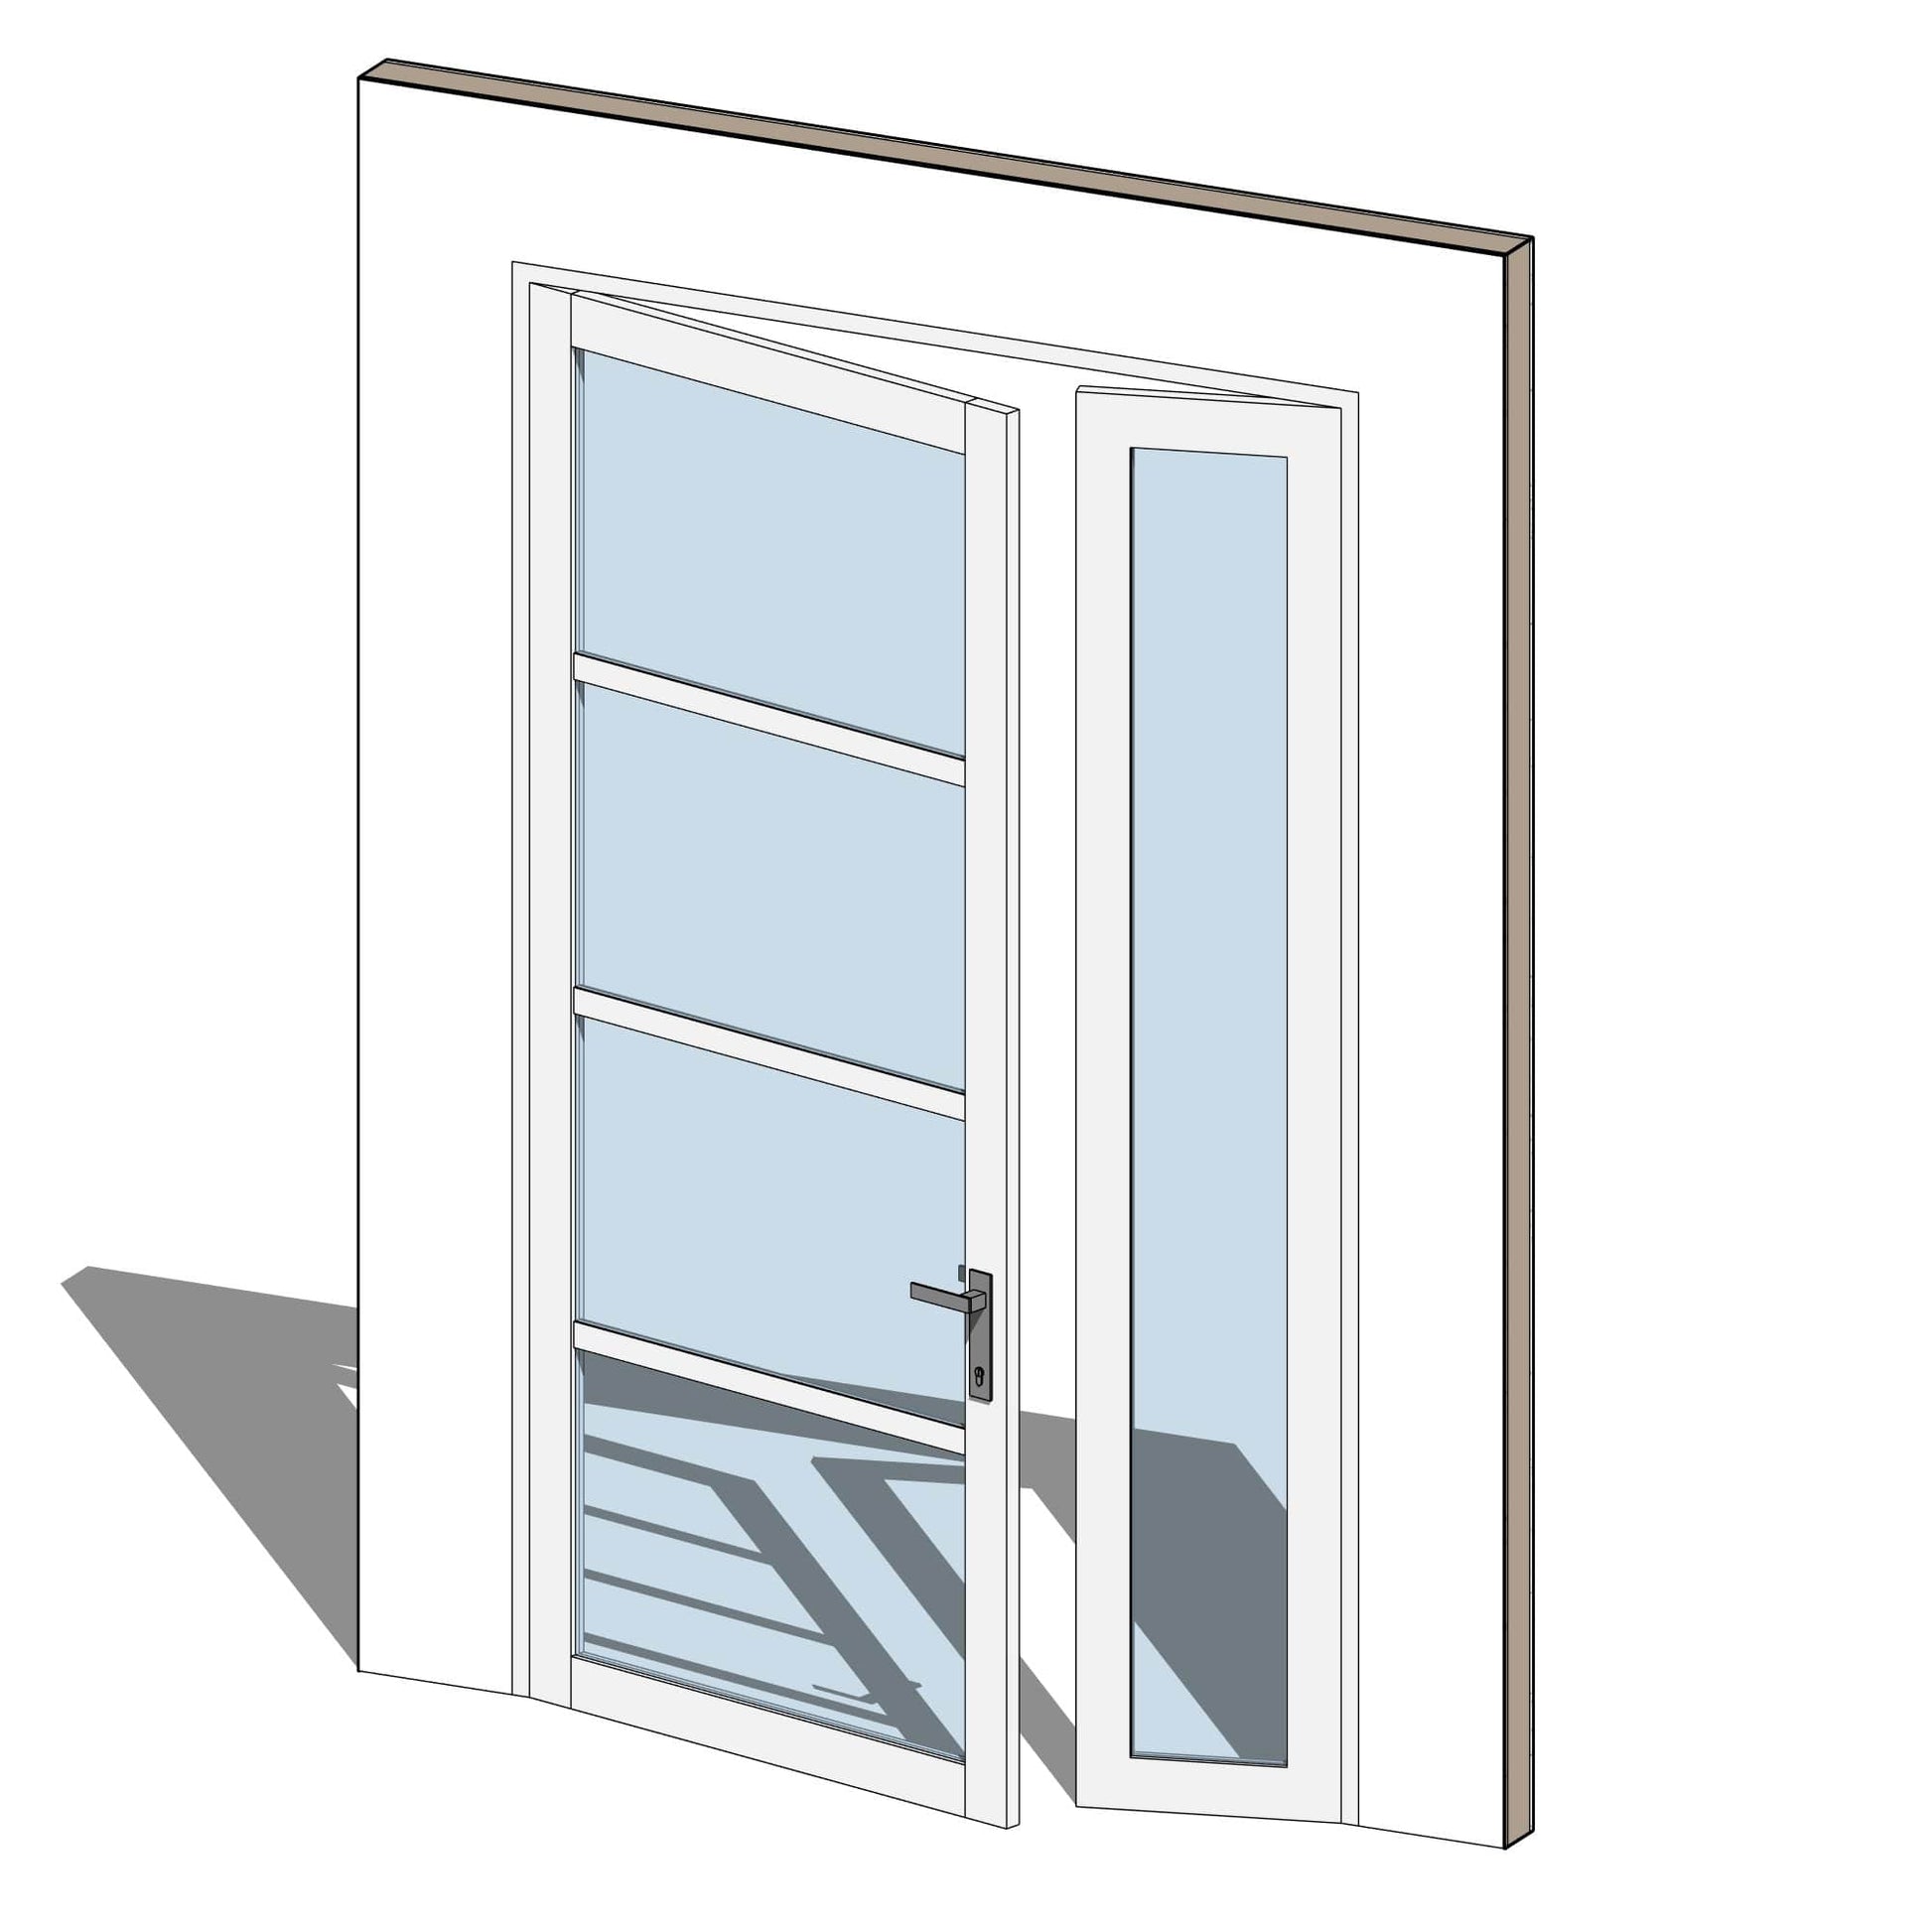 https://www.bimcrafthq.com/cdn/shop/products/bimcrafthq-doors-double-swing-door-653854.jpg?v=1679915680&width=1946